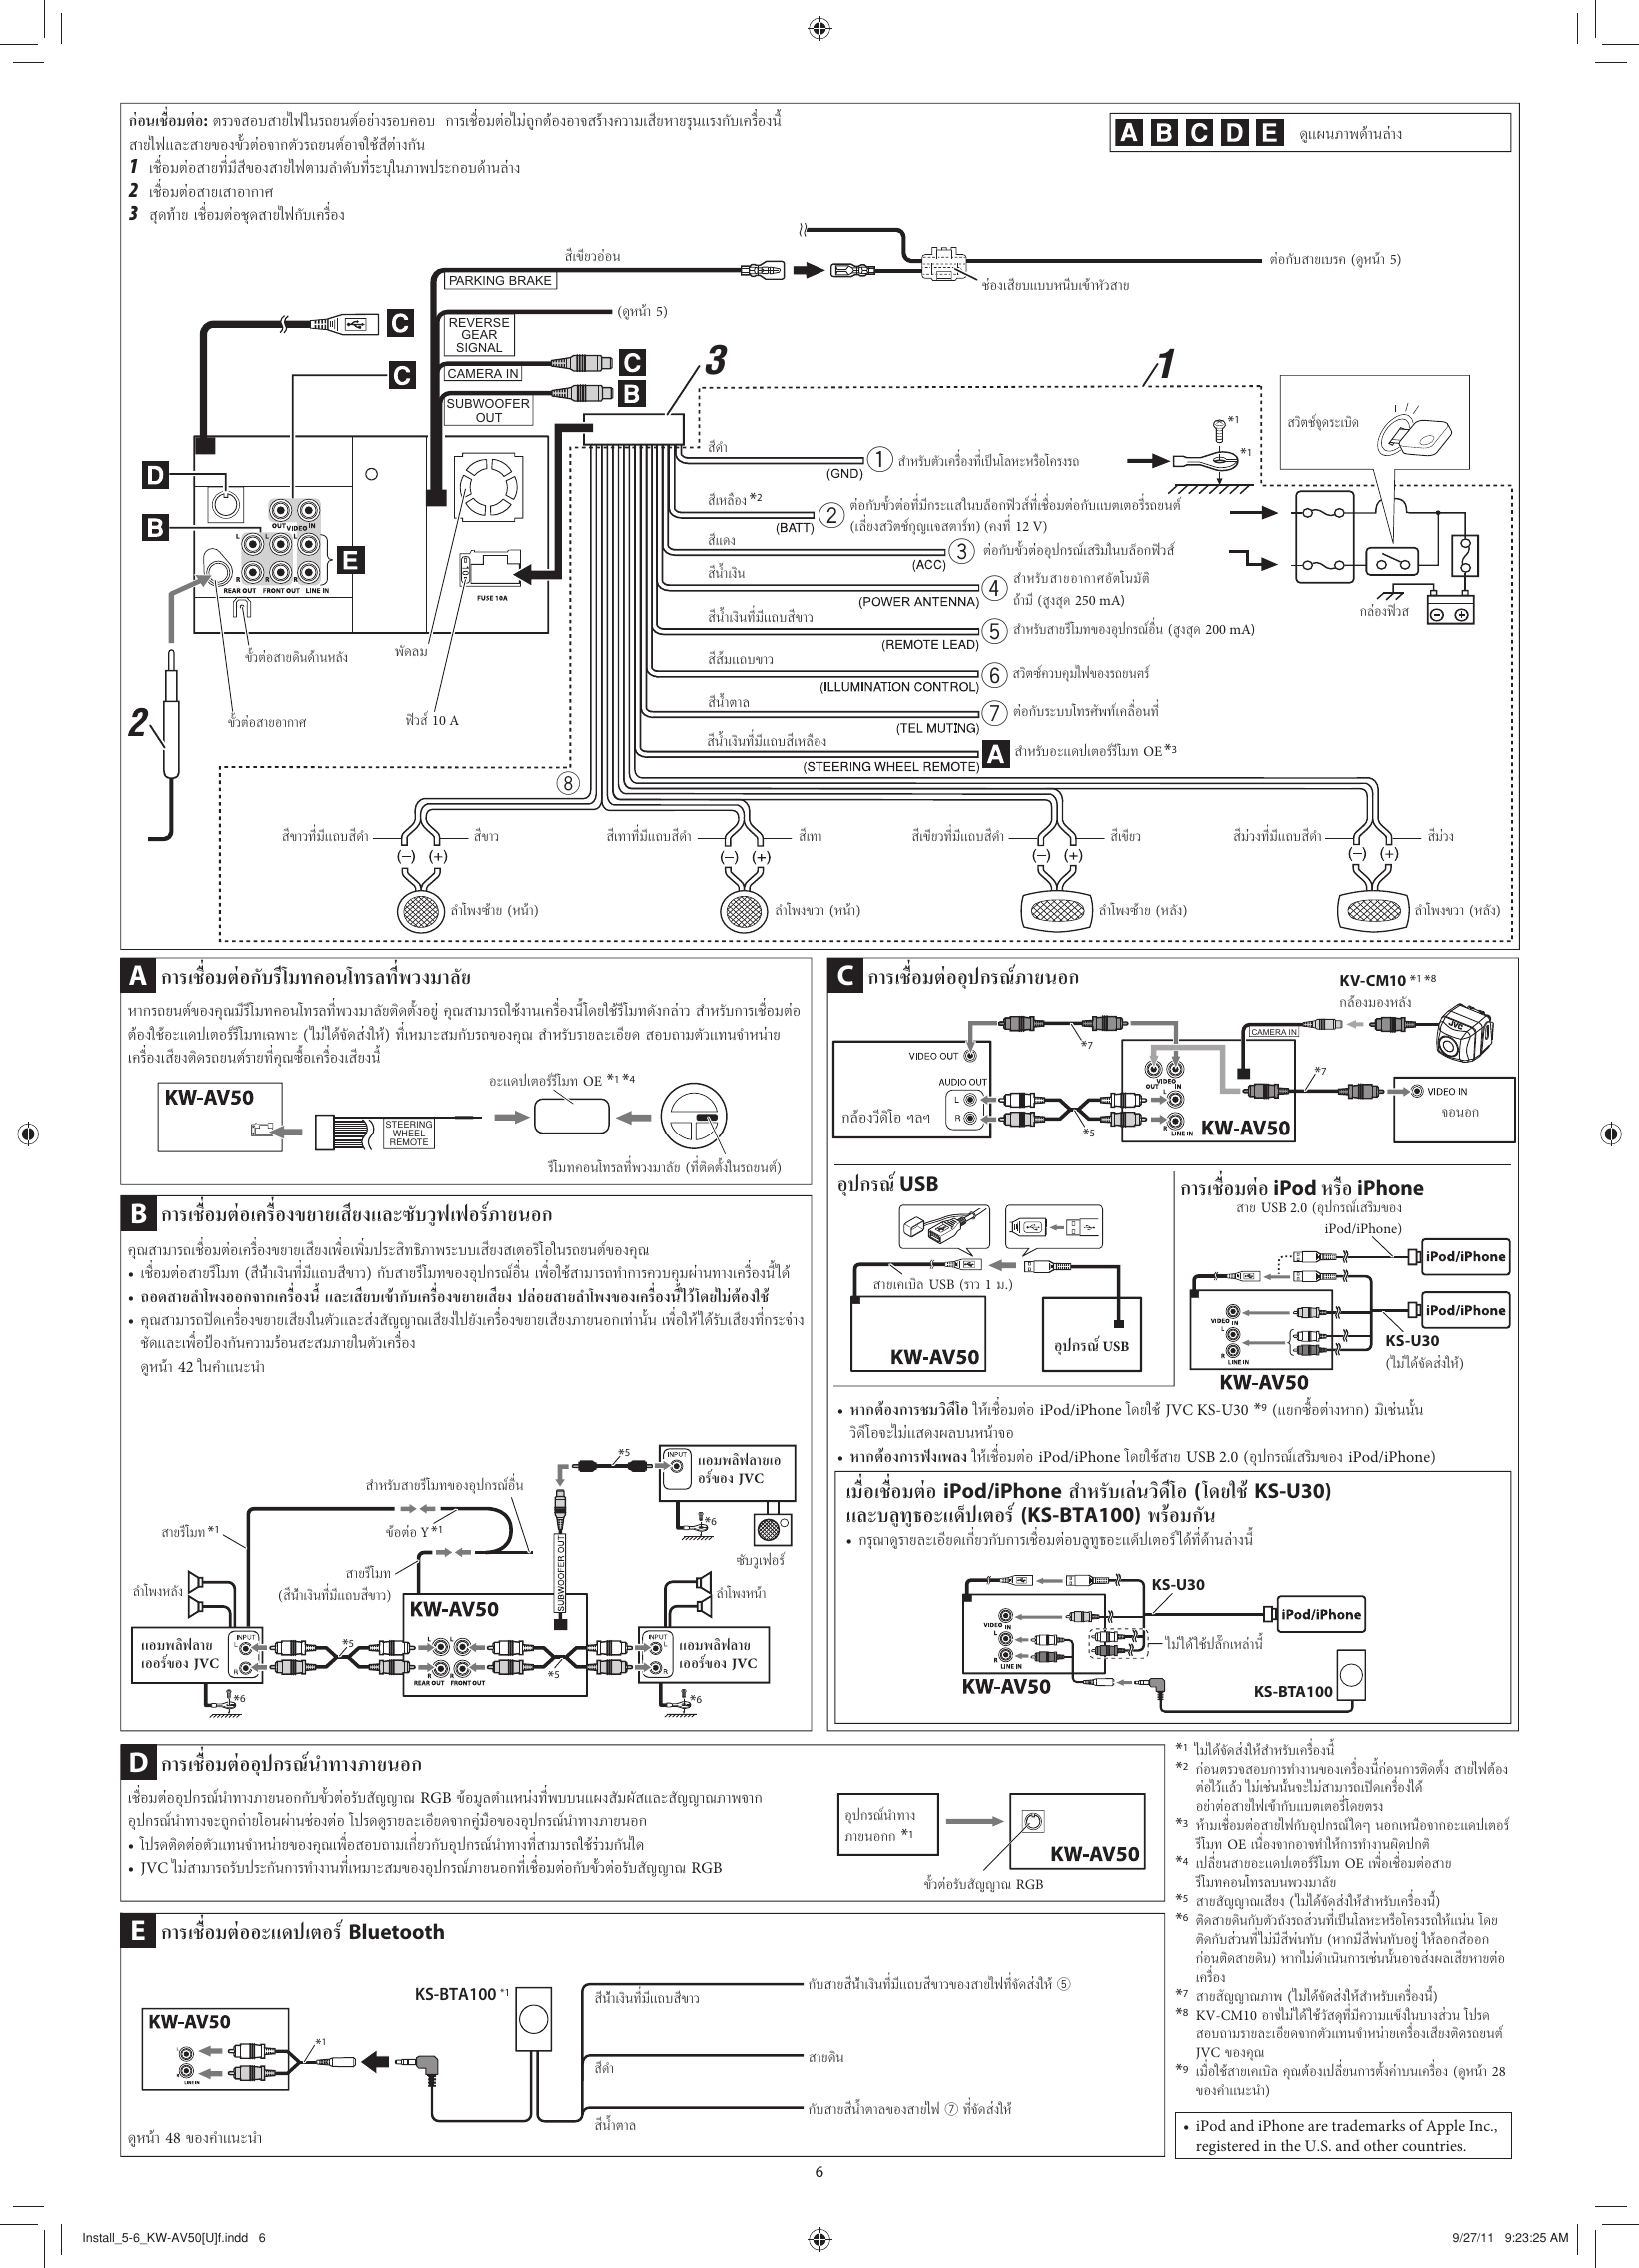 Page 6 of 6 - JVC KW-AV50U KW-AV50[U] User Manual LVT2288-002A